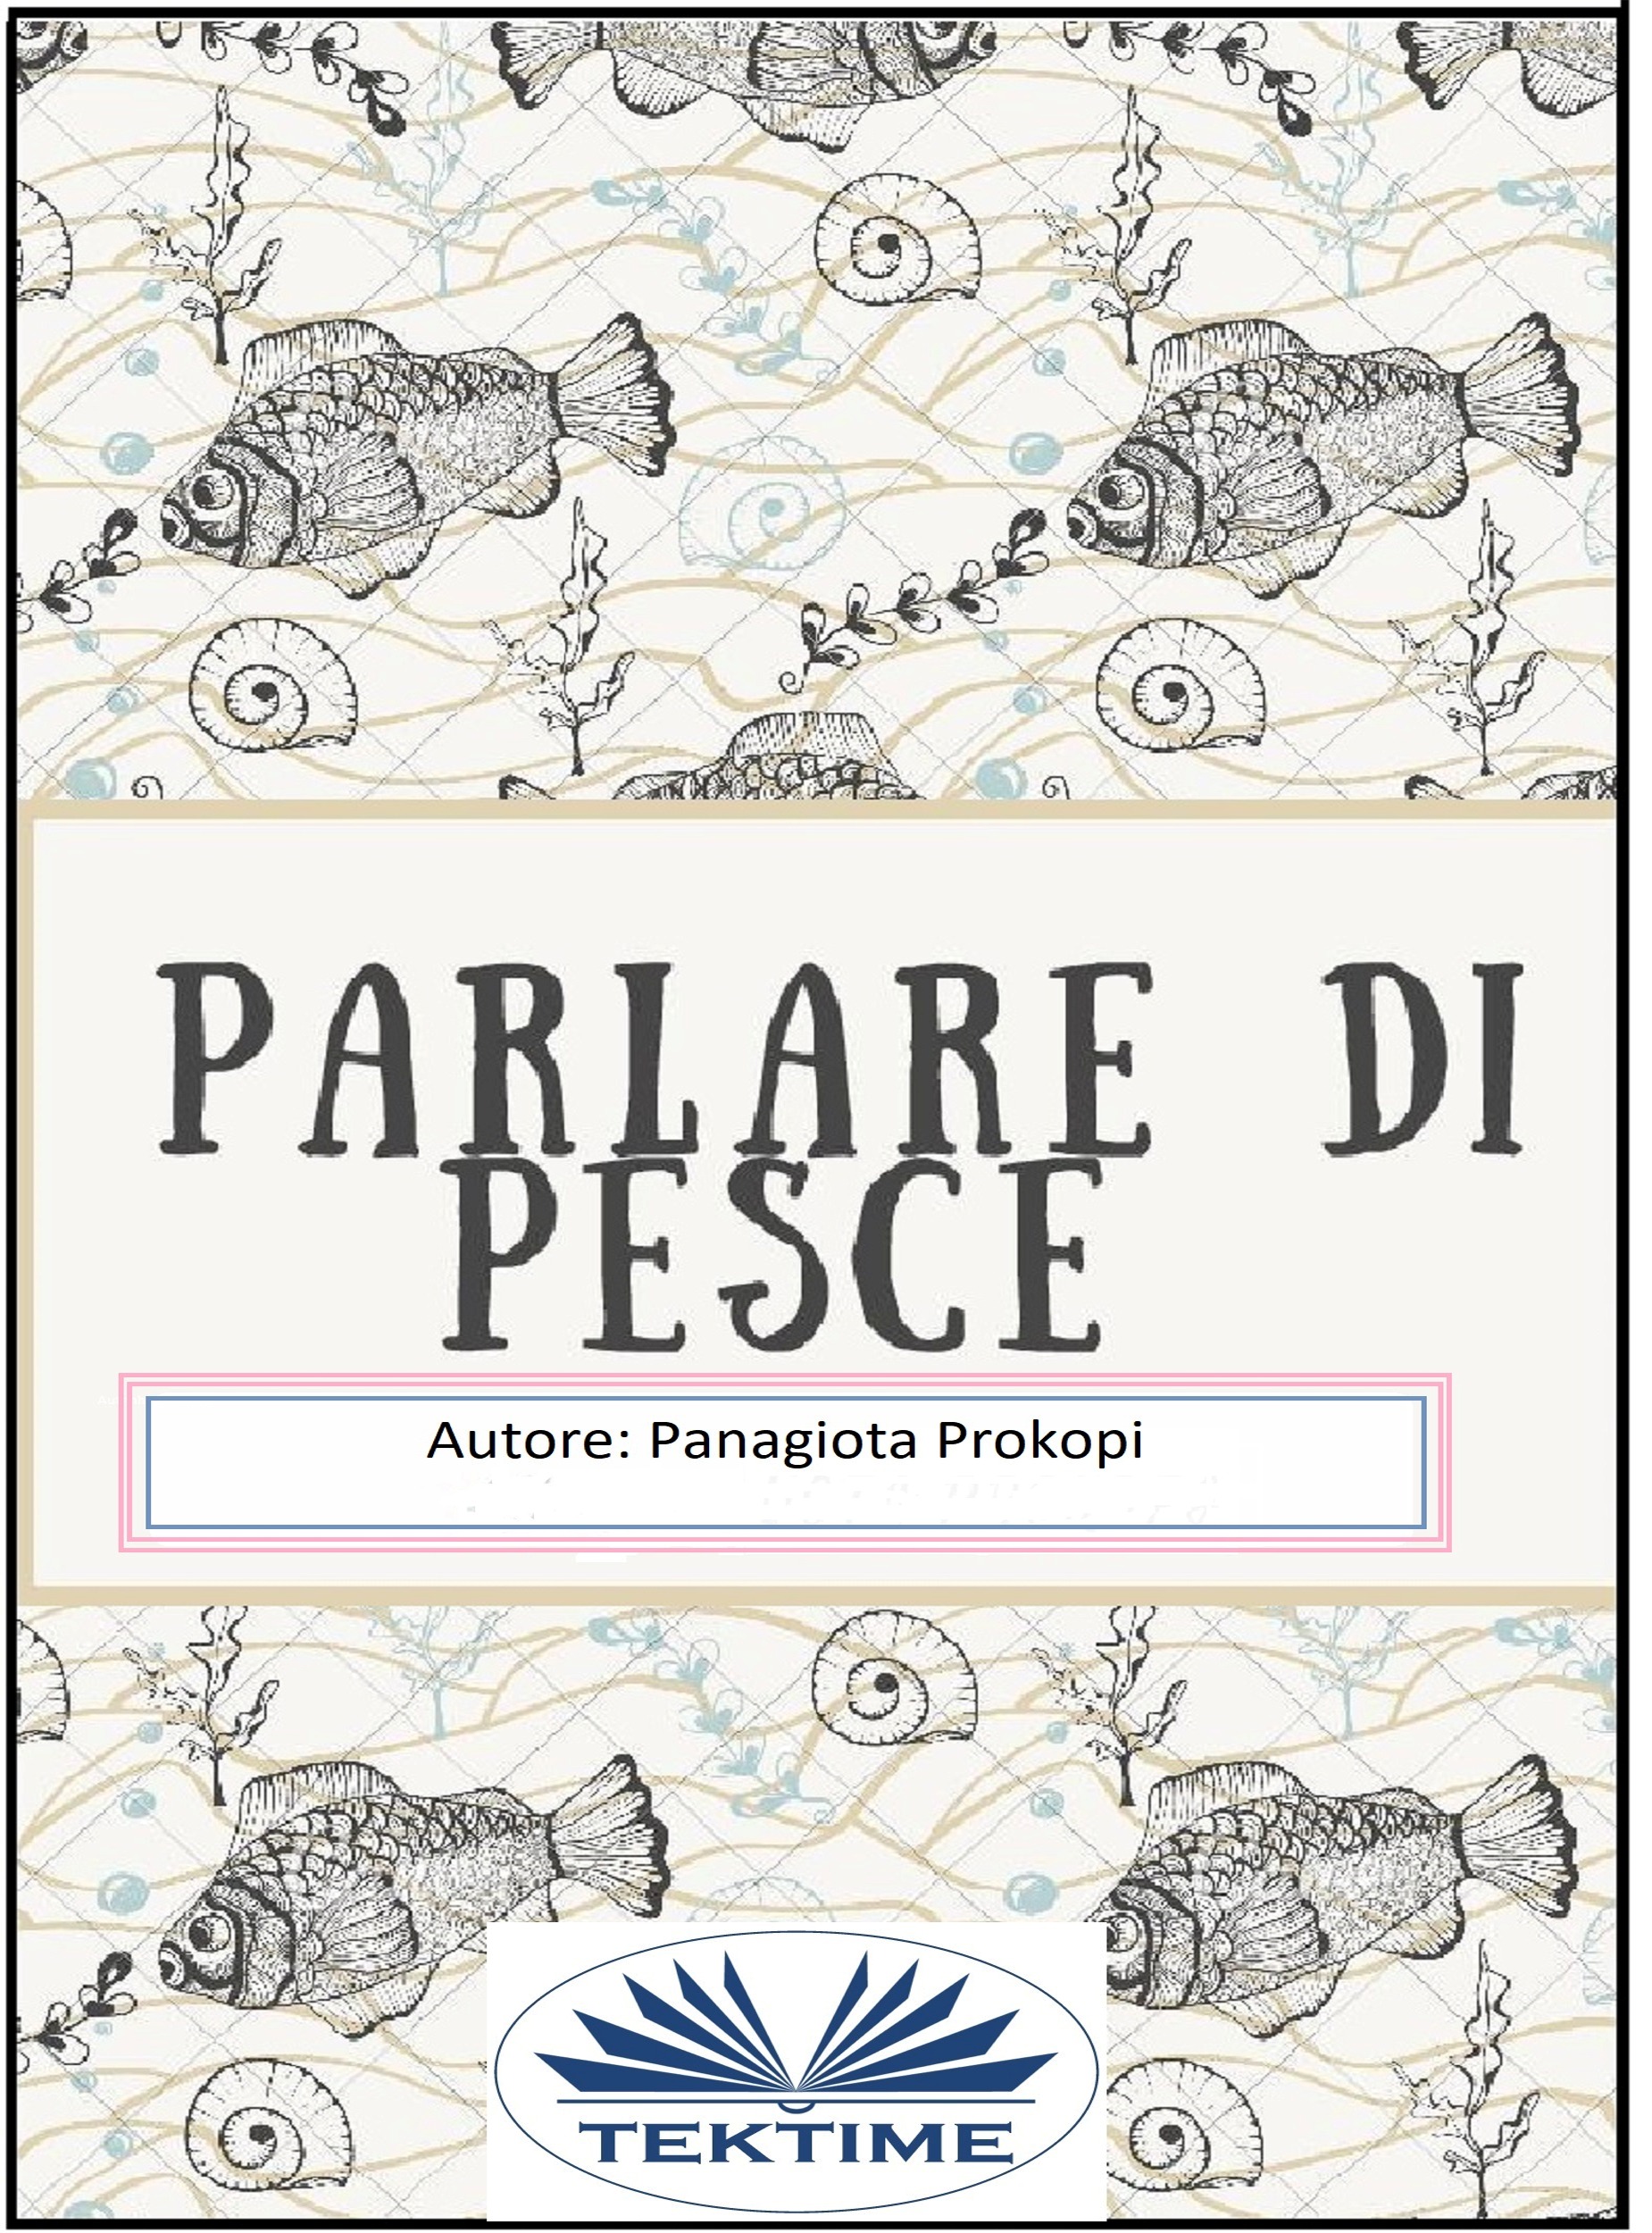 Книга Parlare Di Pesce из серии , созданная Panagiota Prokopi, может относится к жанру Детская проза, Природа и животные, Современная зарубежная литература. Стоимость электронной книги Parlare Di Pesce с идентификатором 40208943 составляет 348.18 руб.